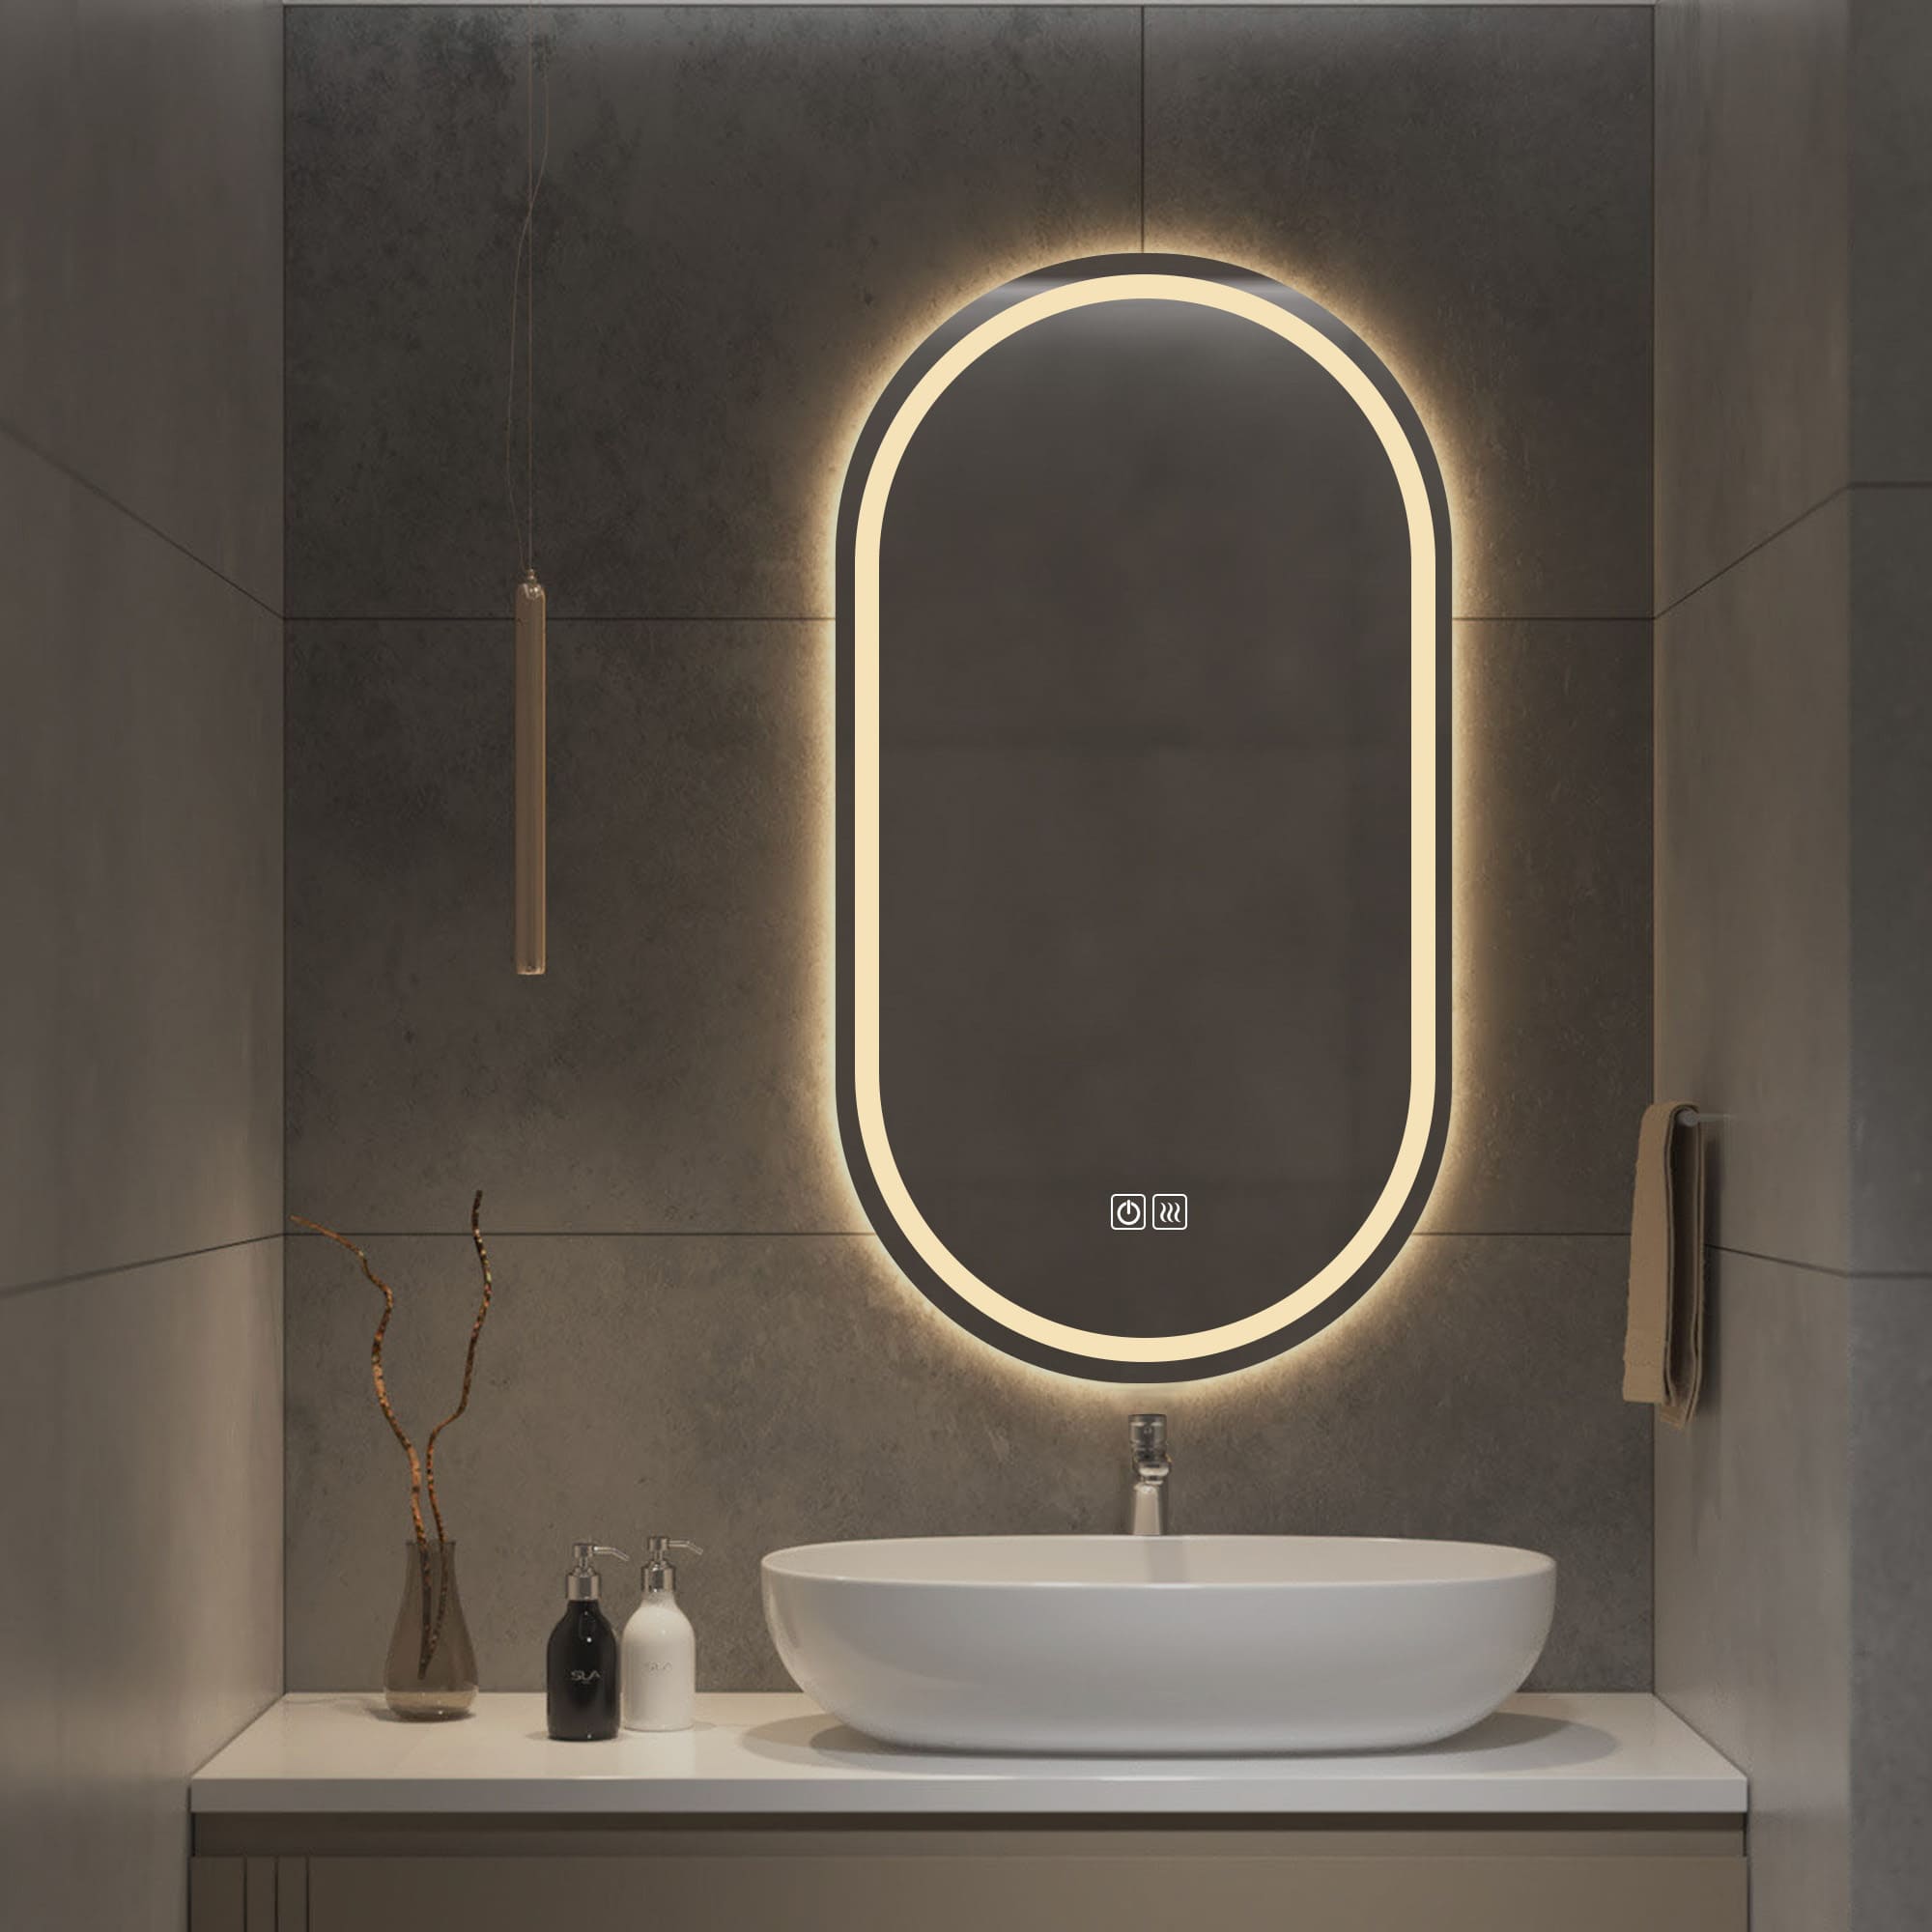 Eris LED Mirror for bathroom 3000k light